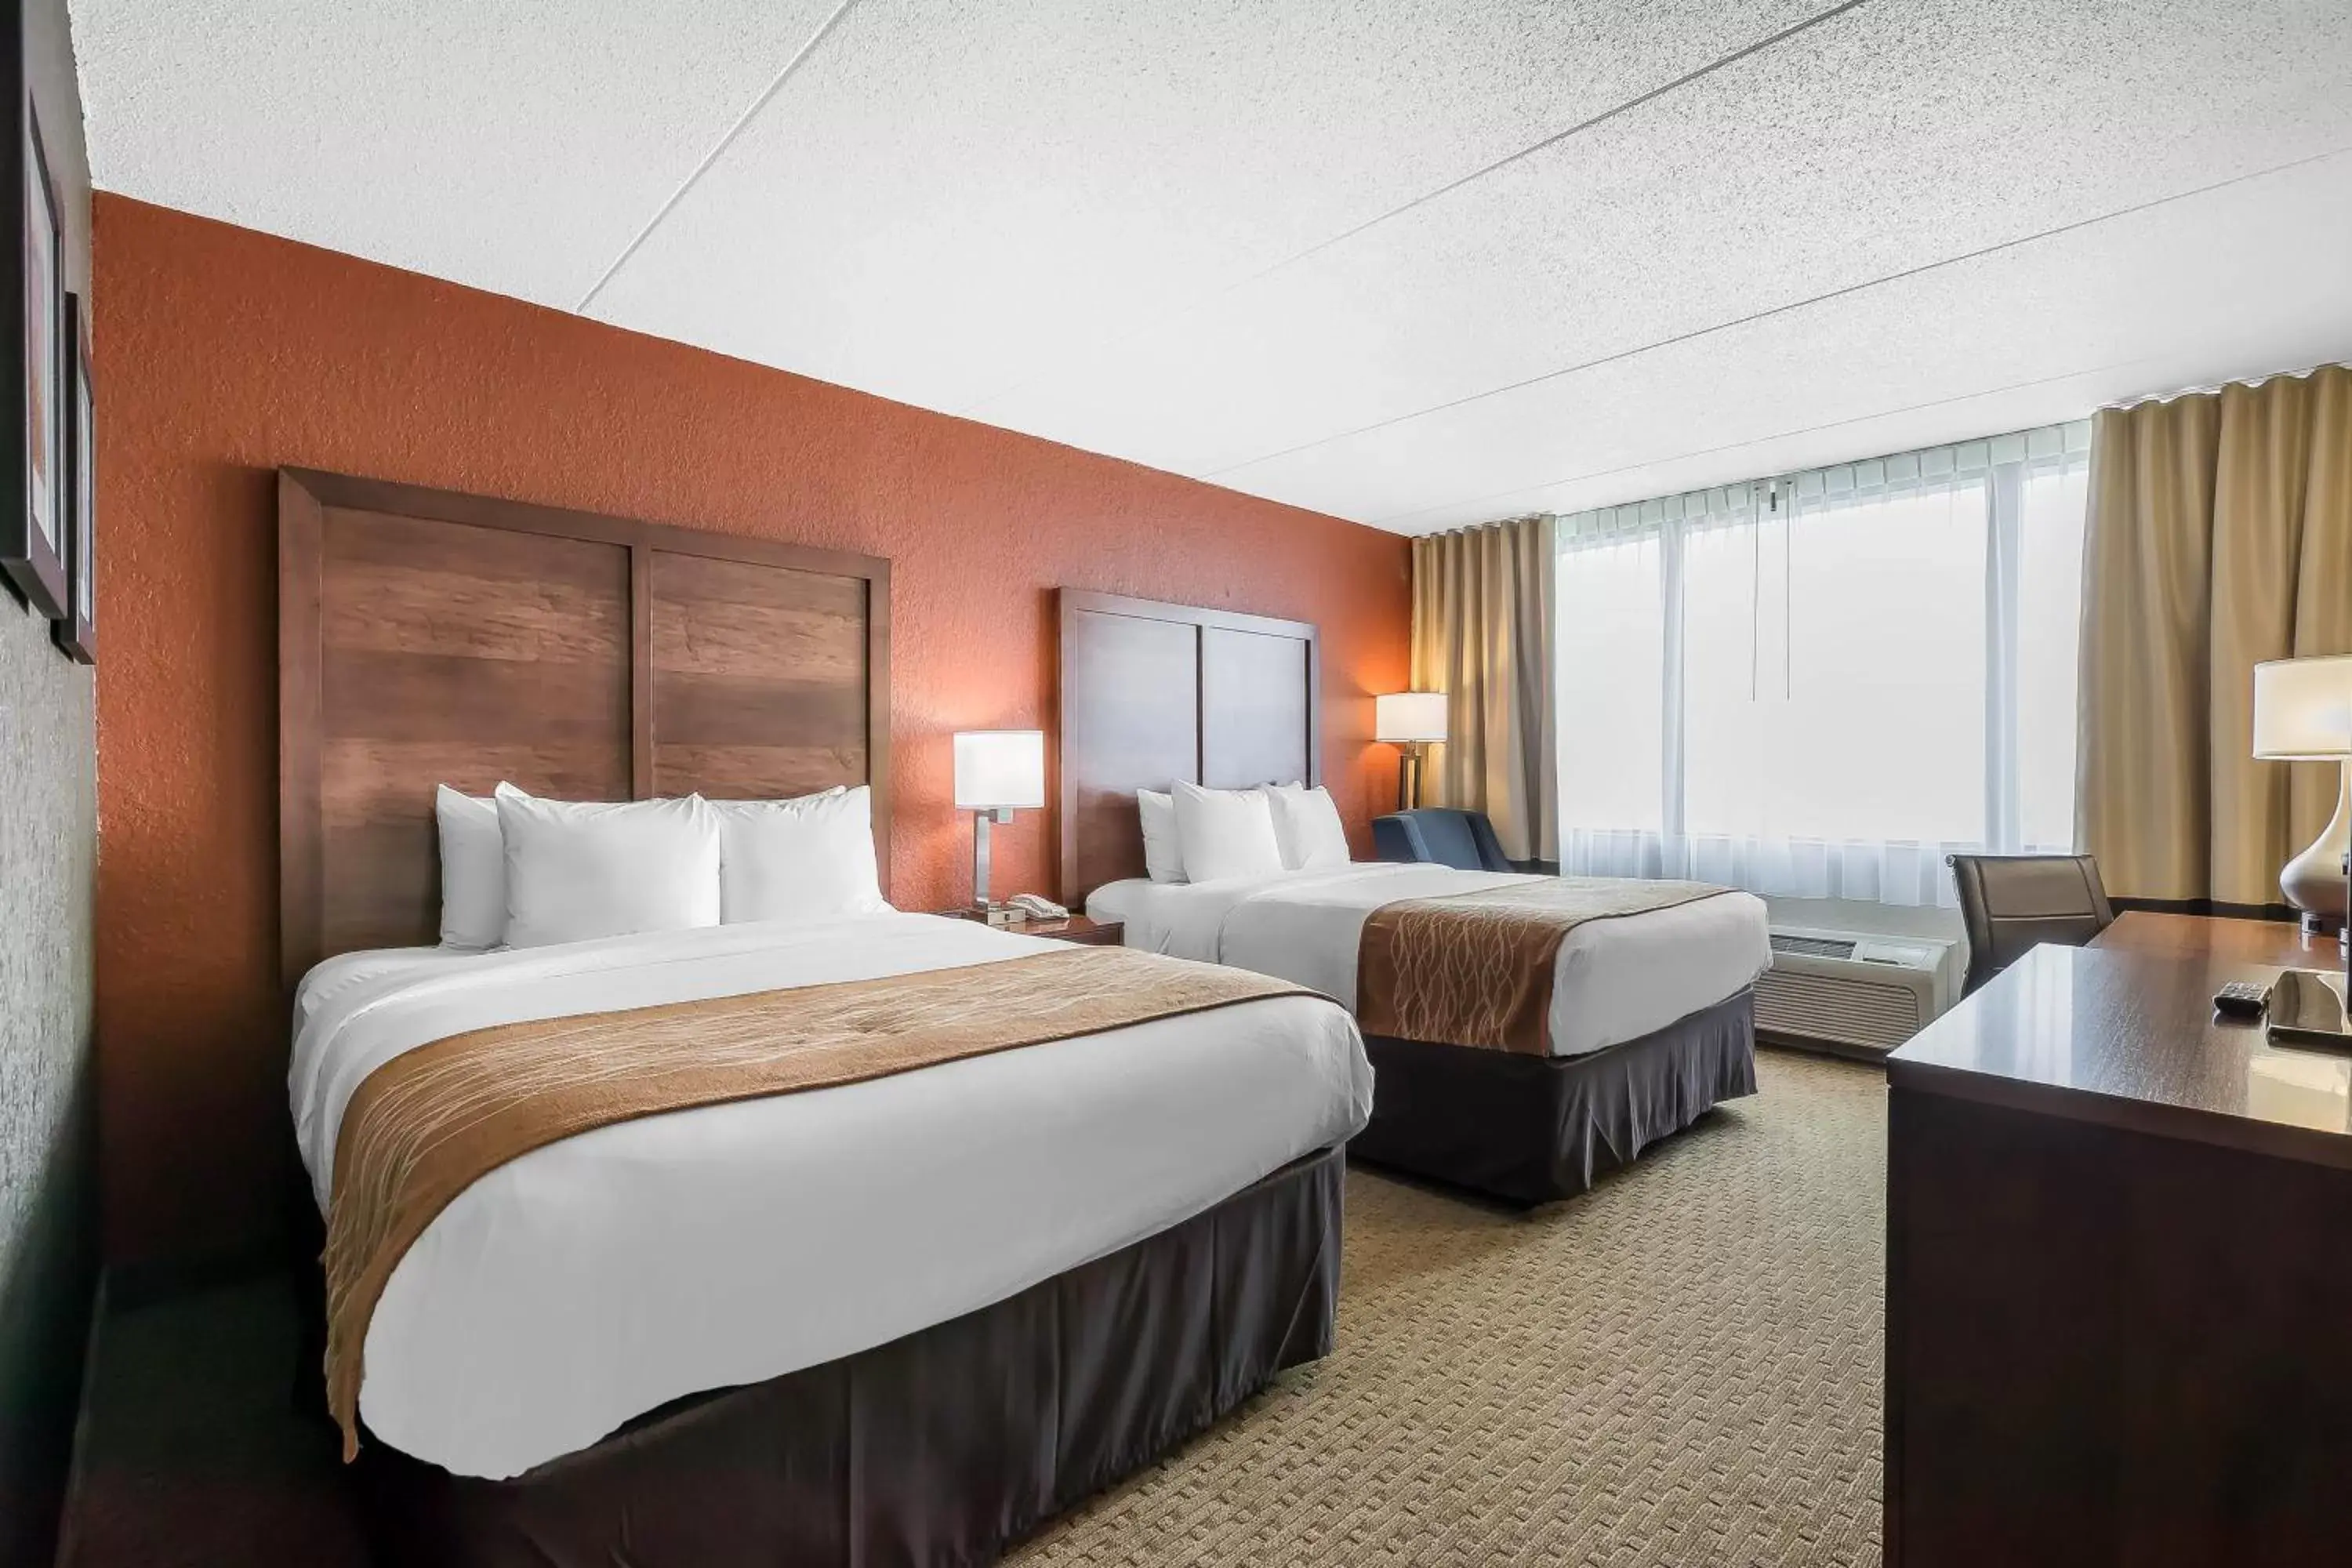 Standard Queen Room with Two Queen Beds in Comfort Inn & Suites Event Center